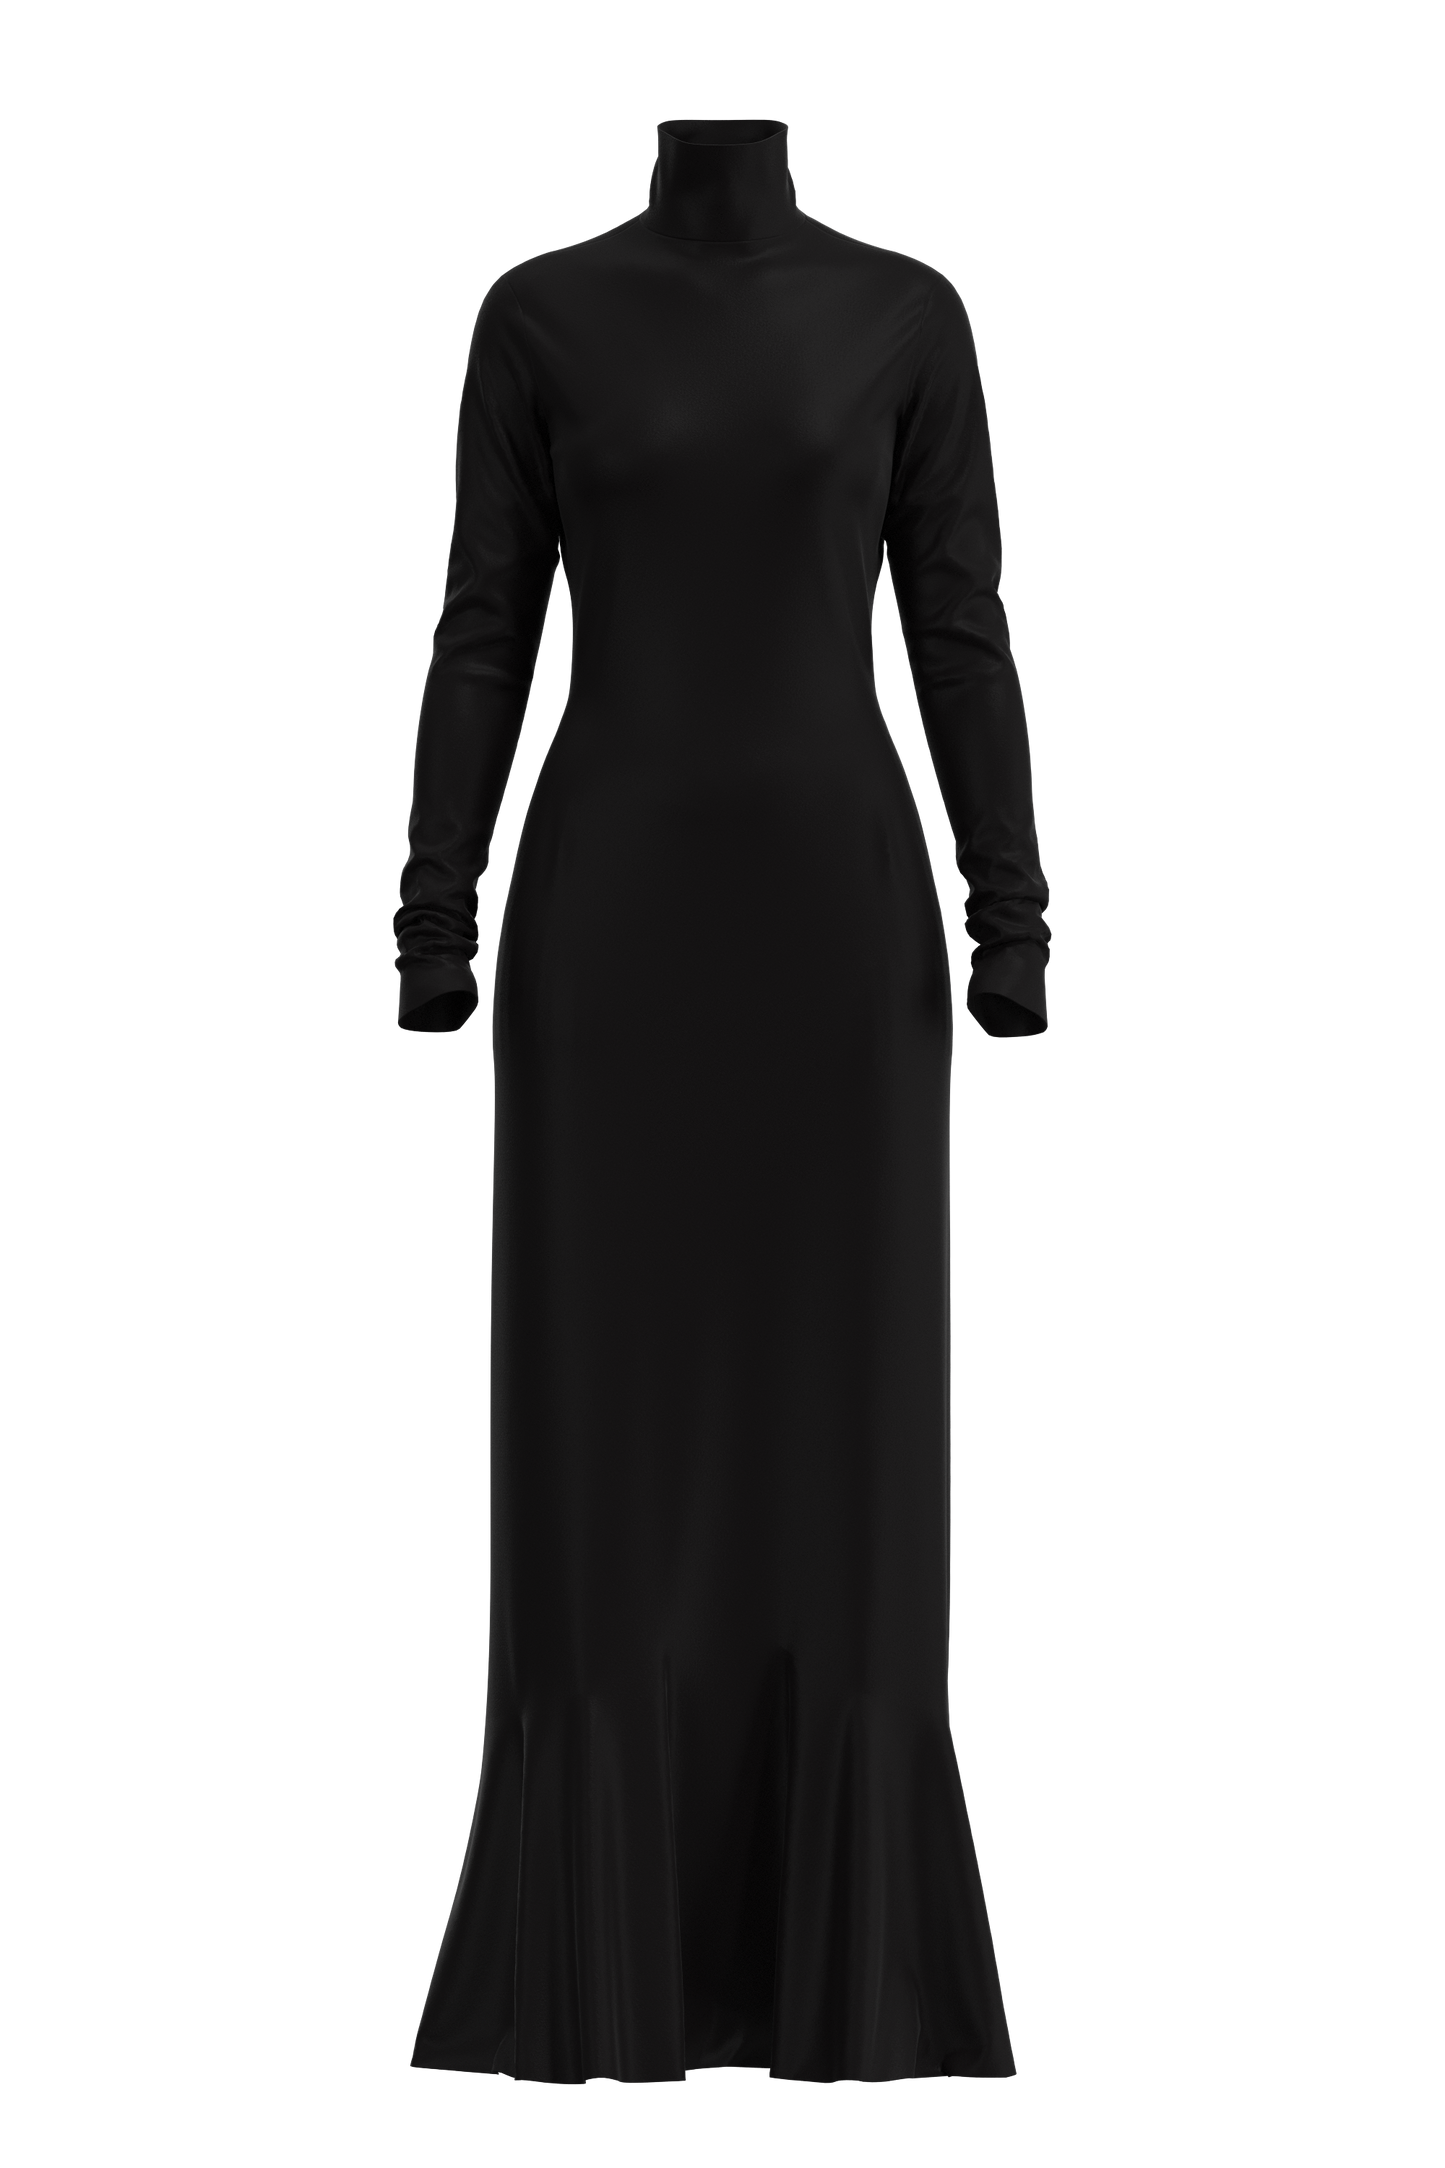  | Full Length Satin Dress Black